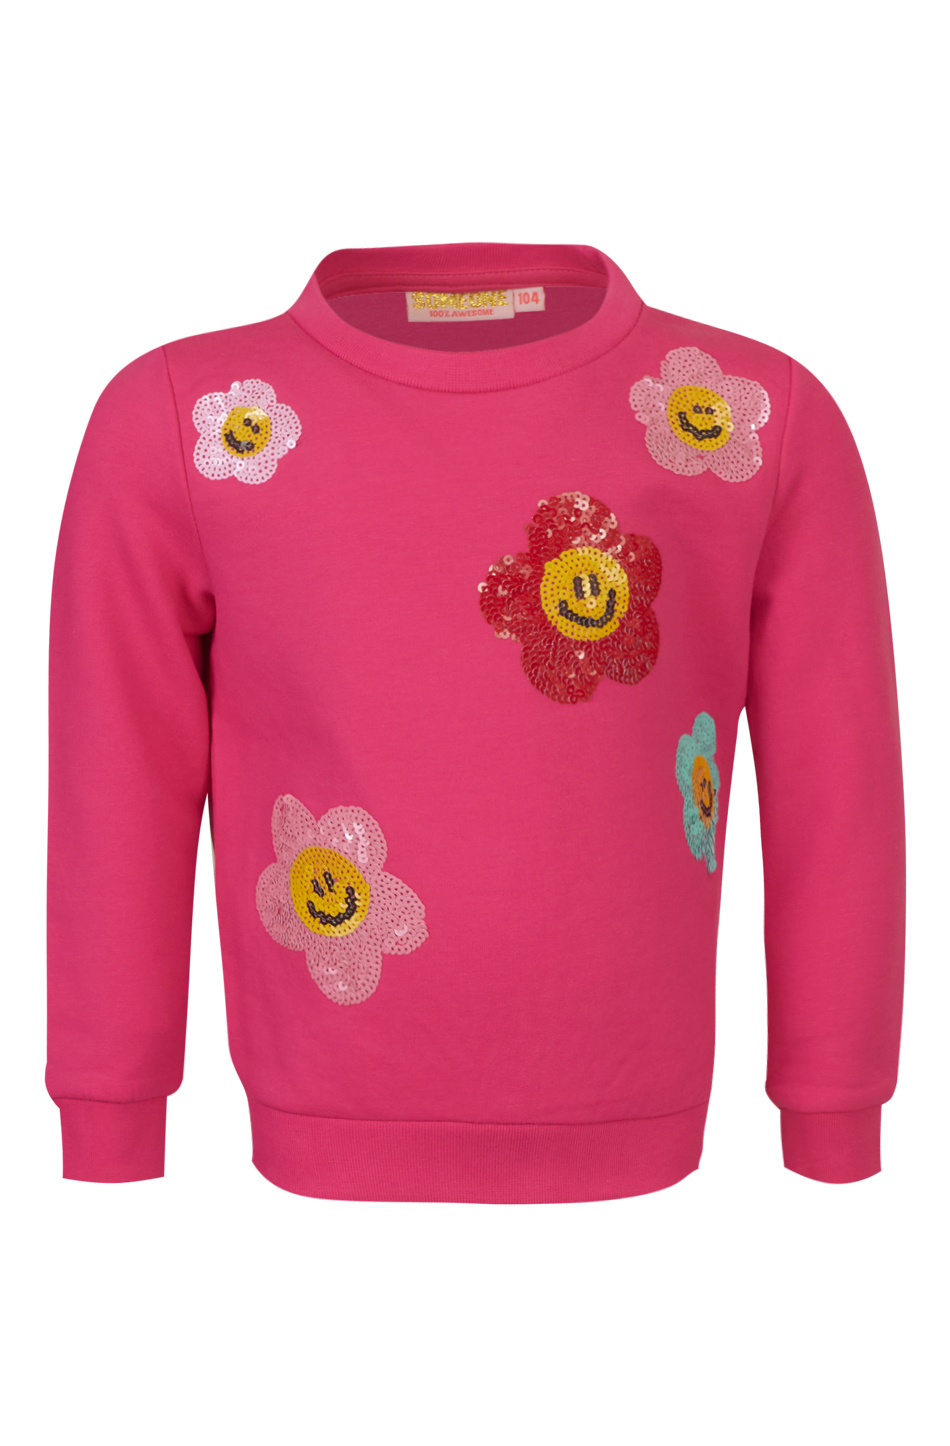 Meisjes sweater - Seventy-SG-16-B - Donker roze